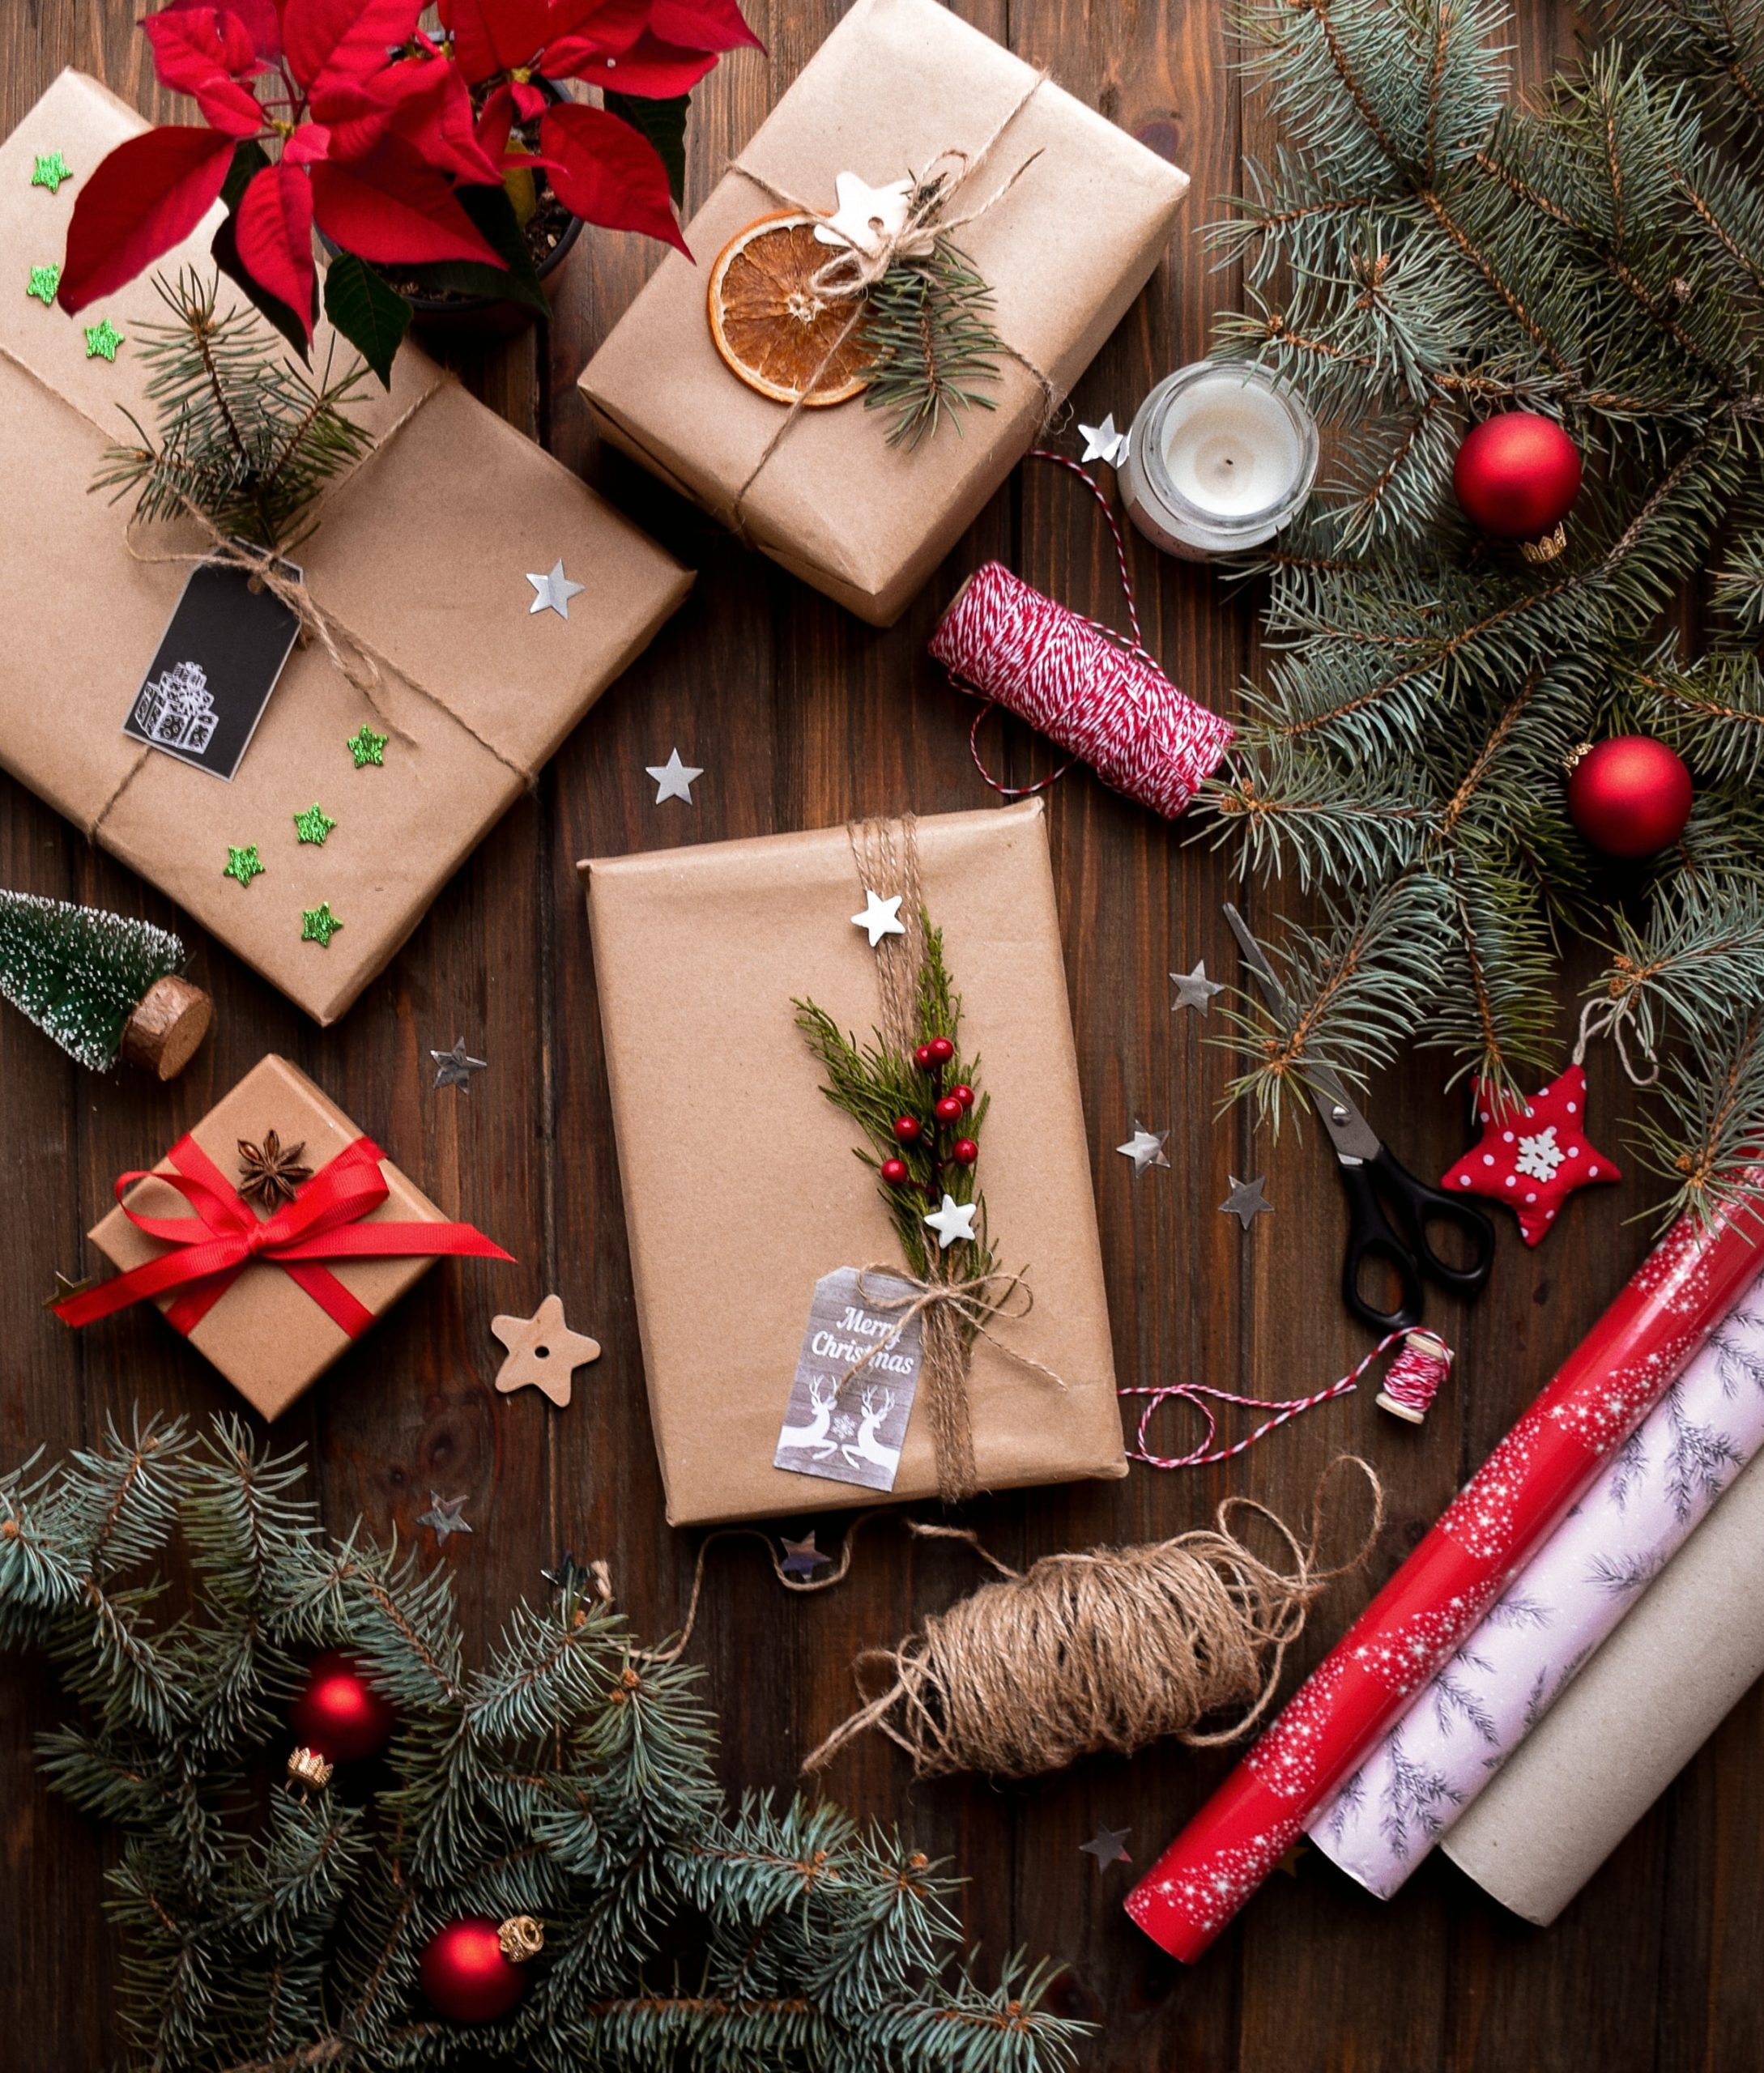 Δώρα - Χριστούγεννα - Δέντρο